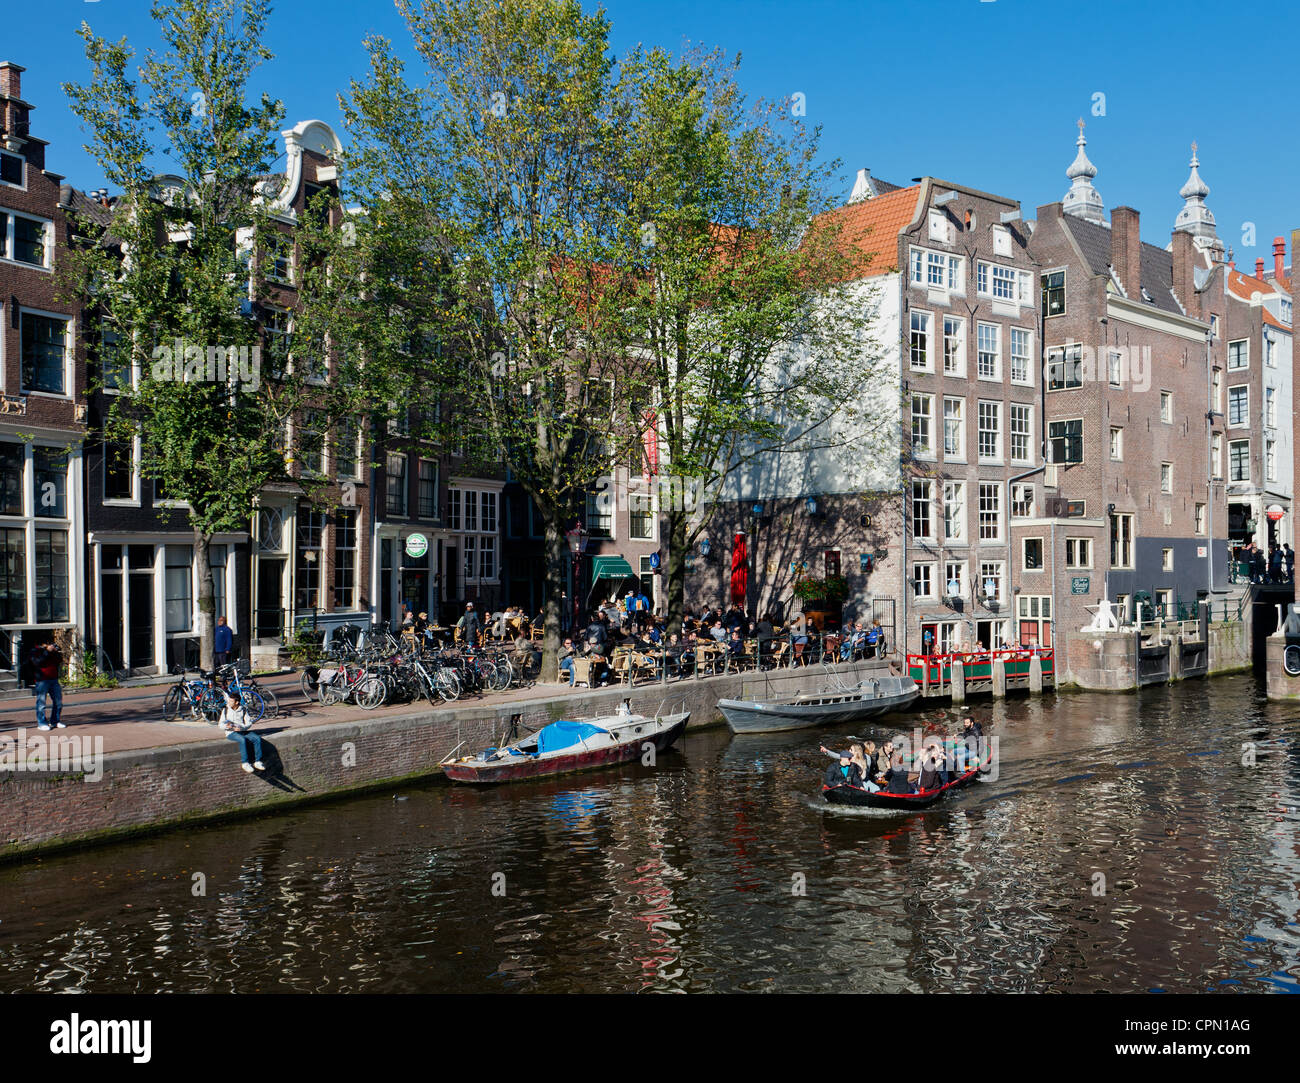 Dimanche après-midi sur le Oudezijds Voorburgwal, un canal populaire dans la vieille ville d'Amsterdam. Banque D'Images